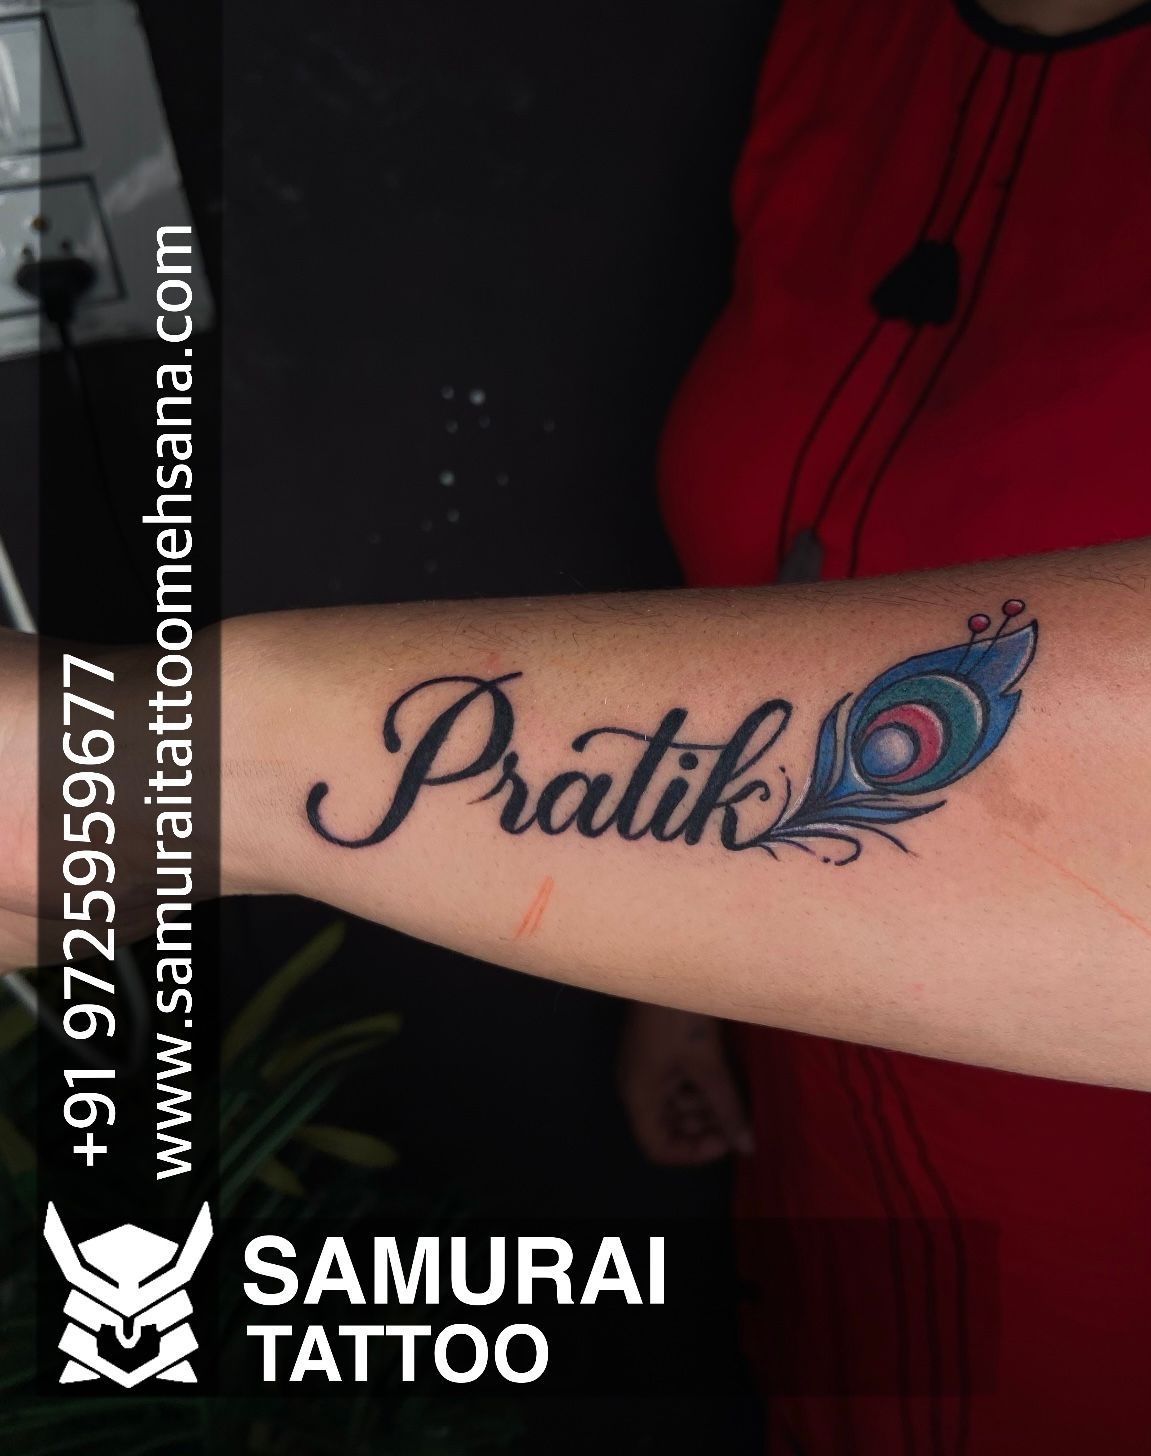 Tattoo uploaded by Vipul Chaudhary • Pratik name tattoo |Pratik ...